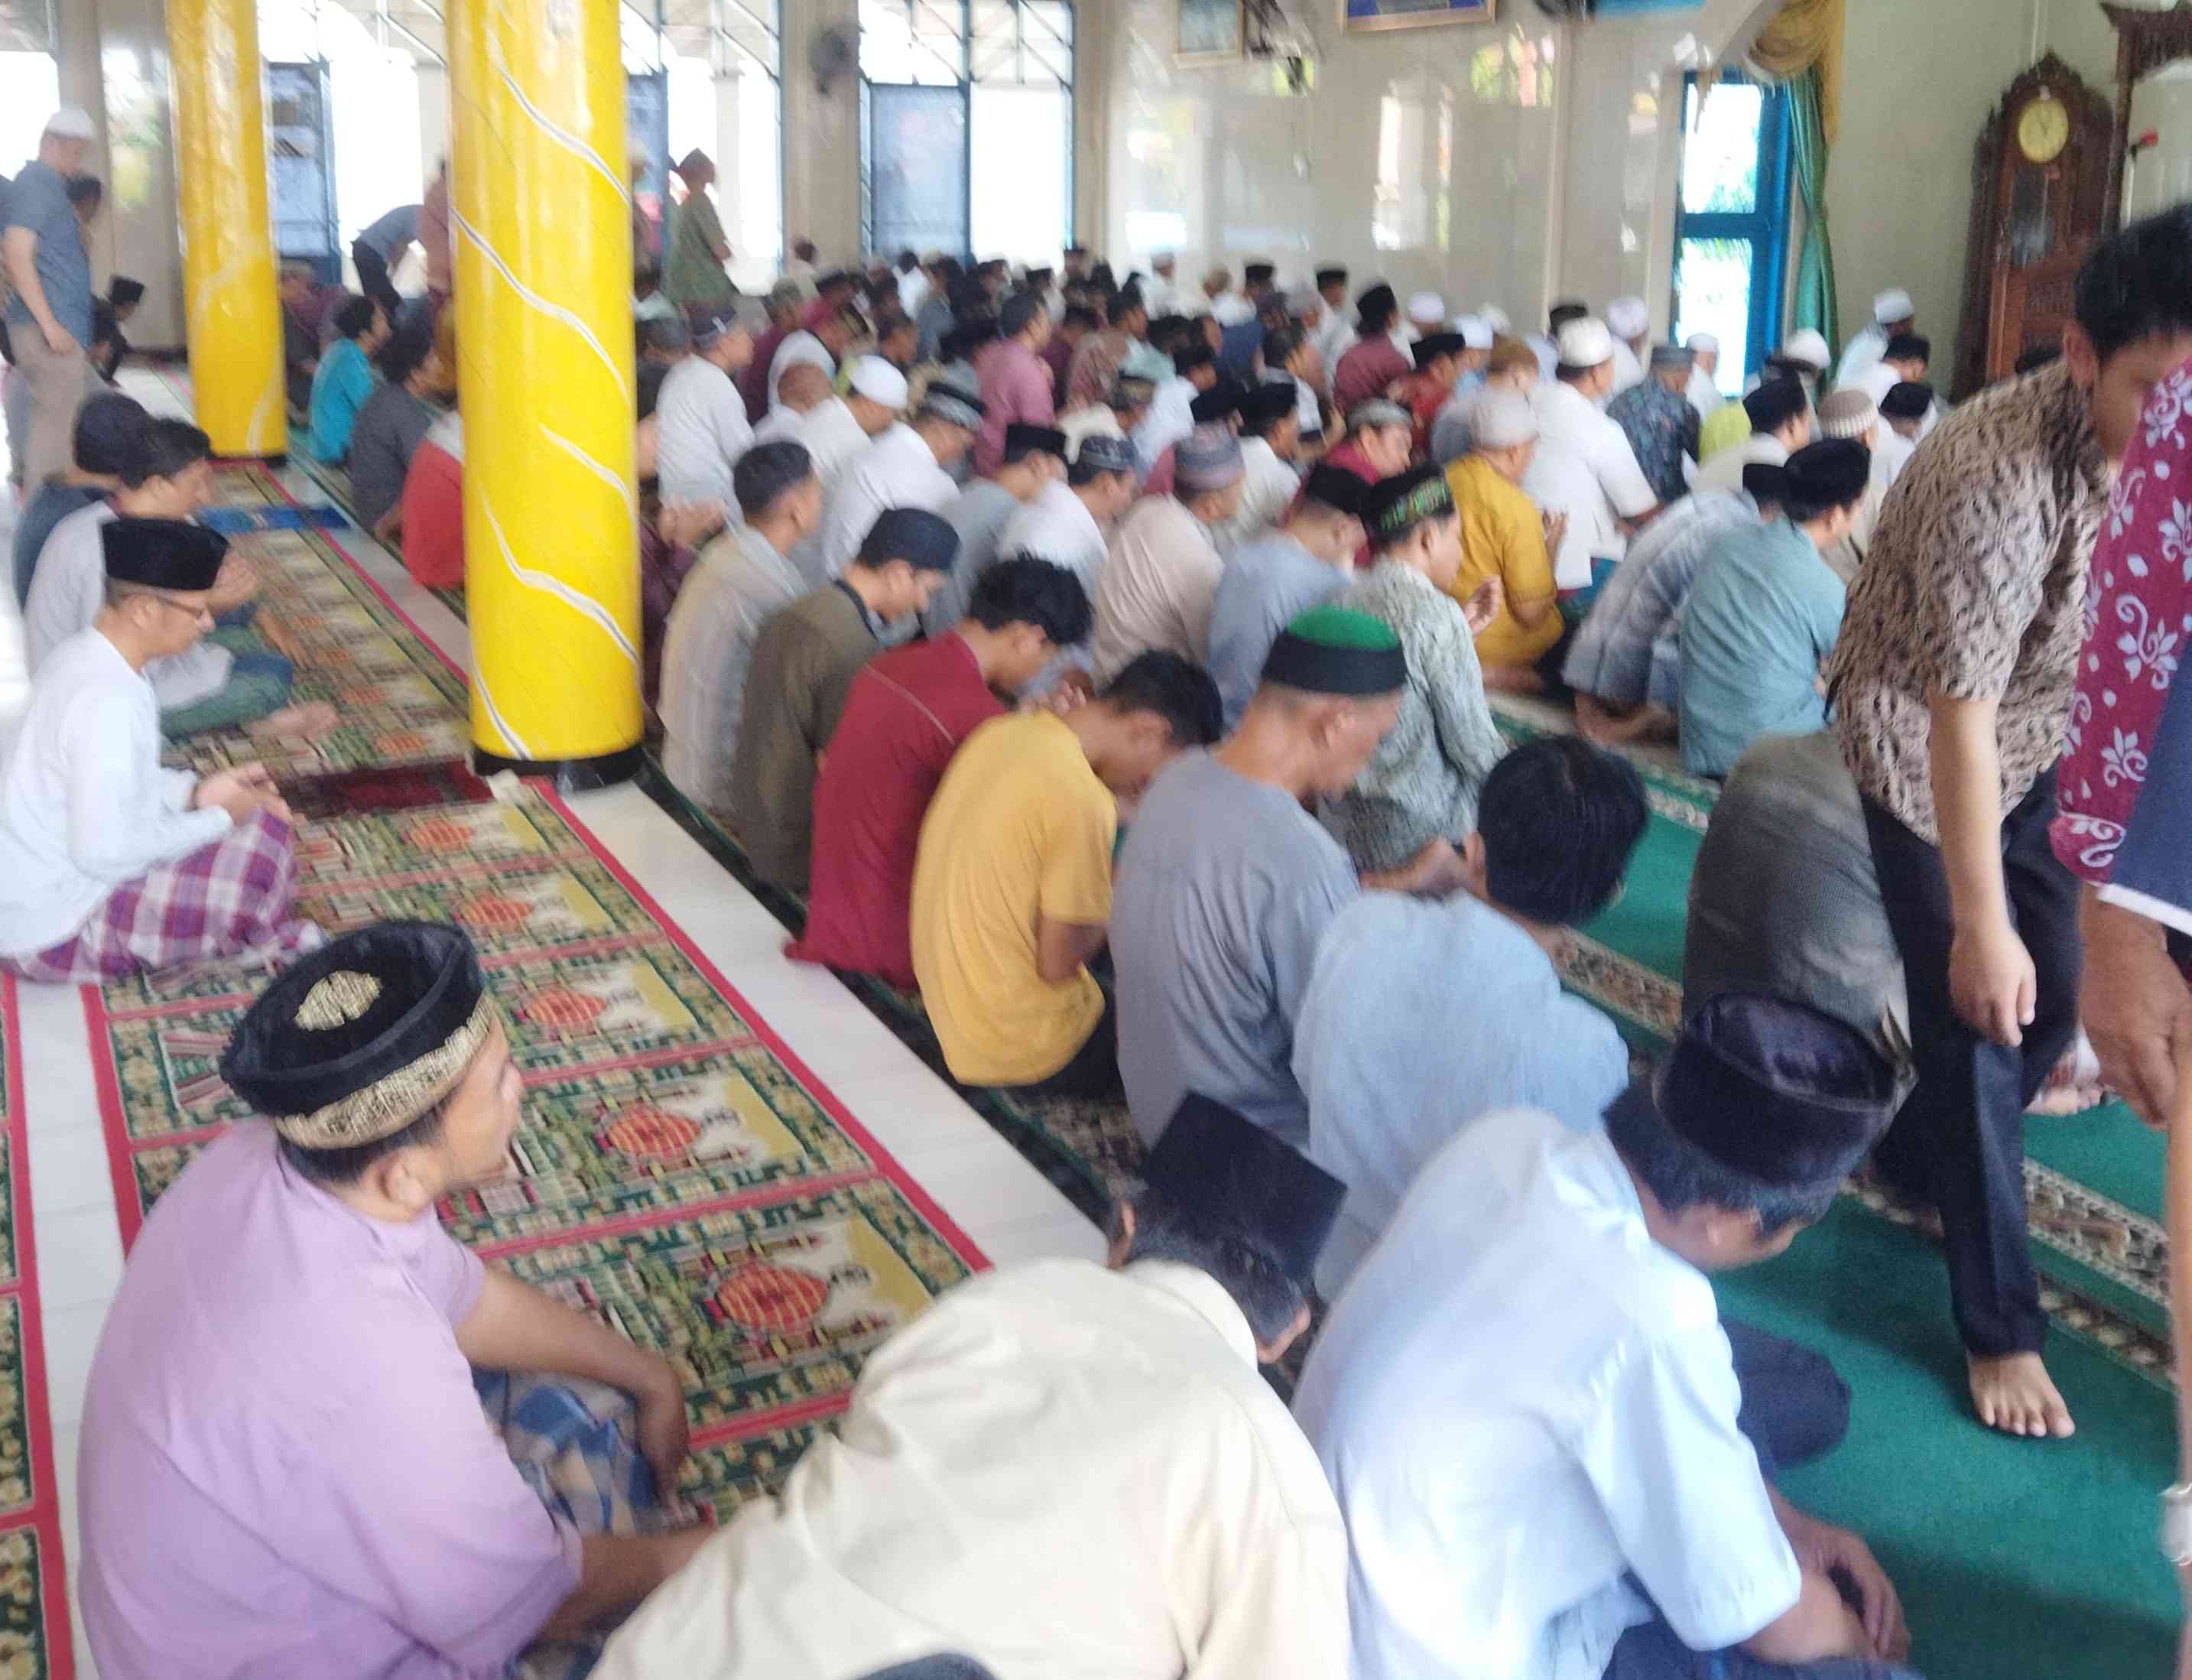 Foto Jemaah Jum'at di sebuah Masjid Kota Bengkulu. Sumber : Dokumen pribadi